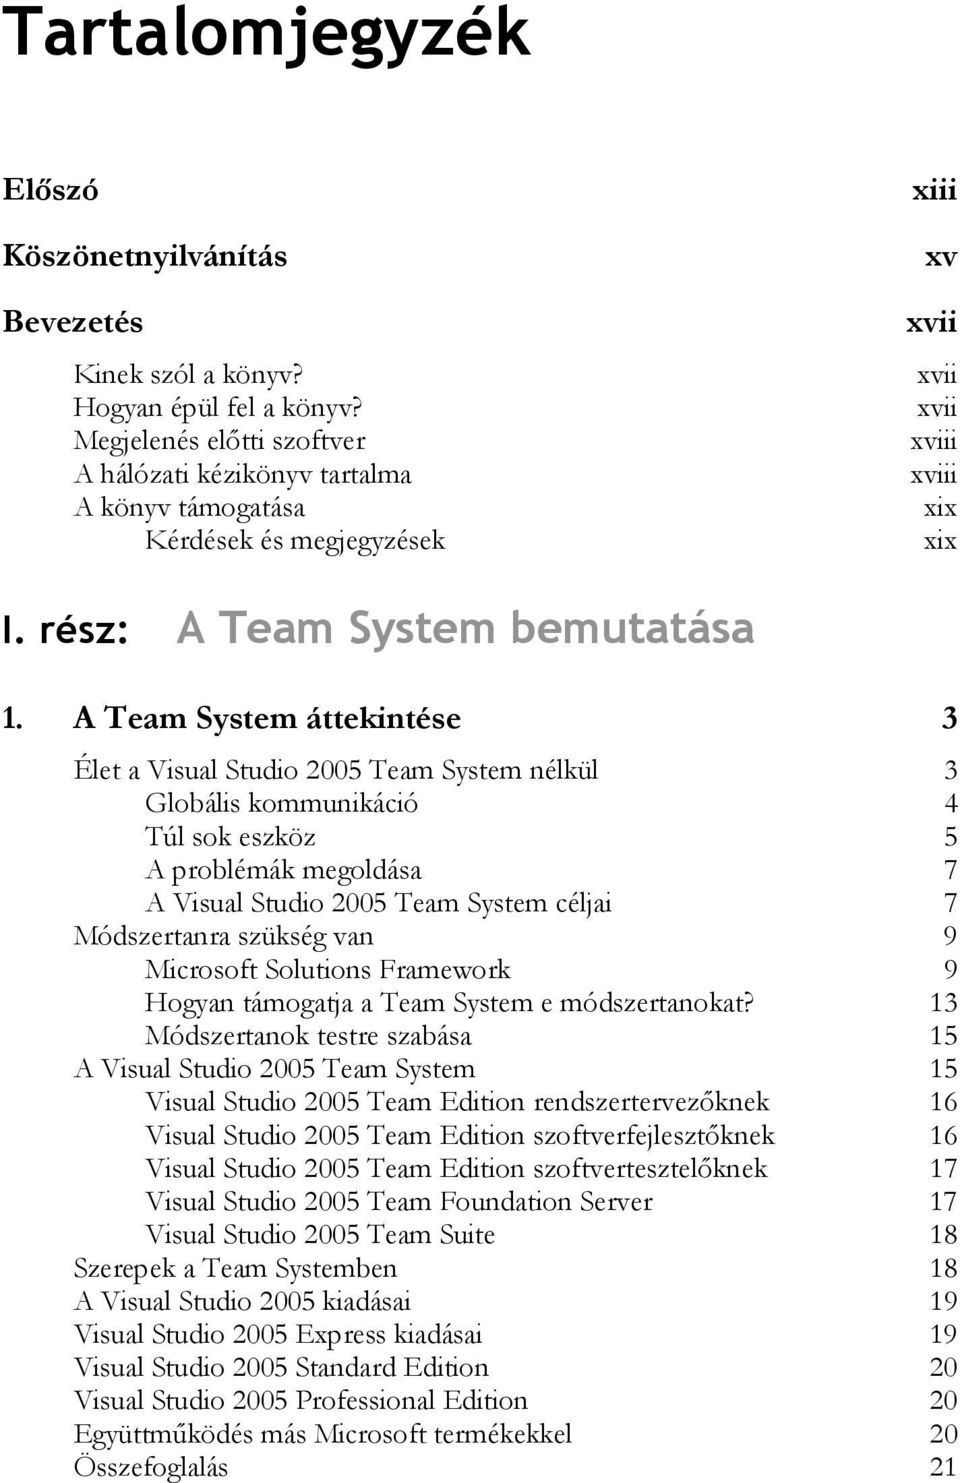 A Team System áttekintése 3 Élet a Visual Studio 2005 Team System nélkül 3 Globális kommunikáció 4 Túl sok eszköz 5 A problémák megoldása 7 A Visual Studio 2005 Team System céljai 7 Módszertanra